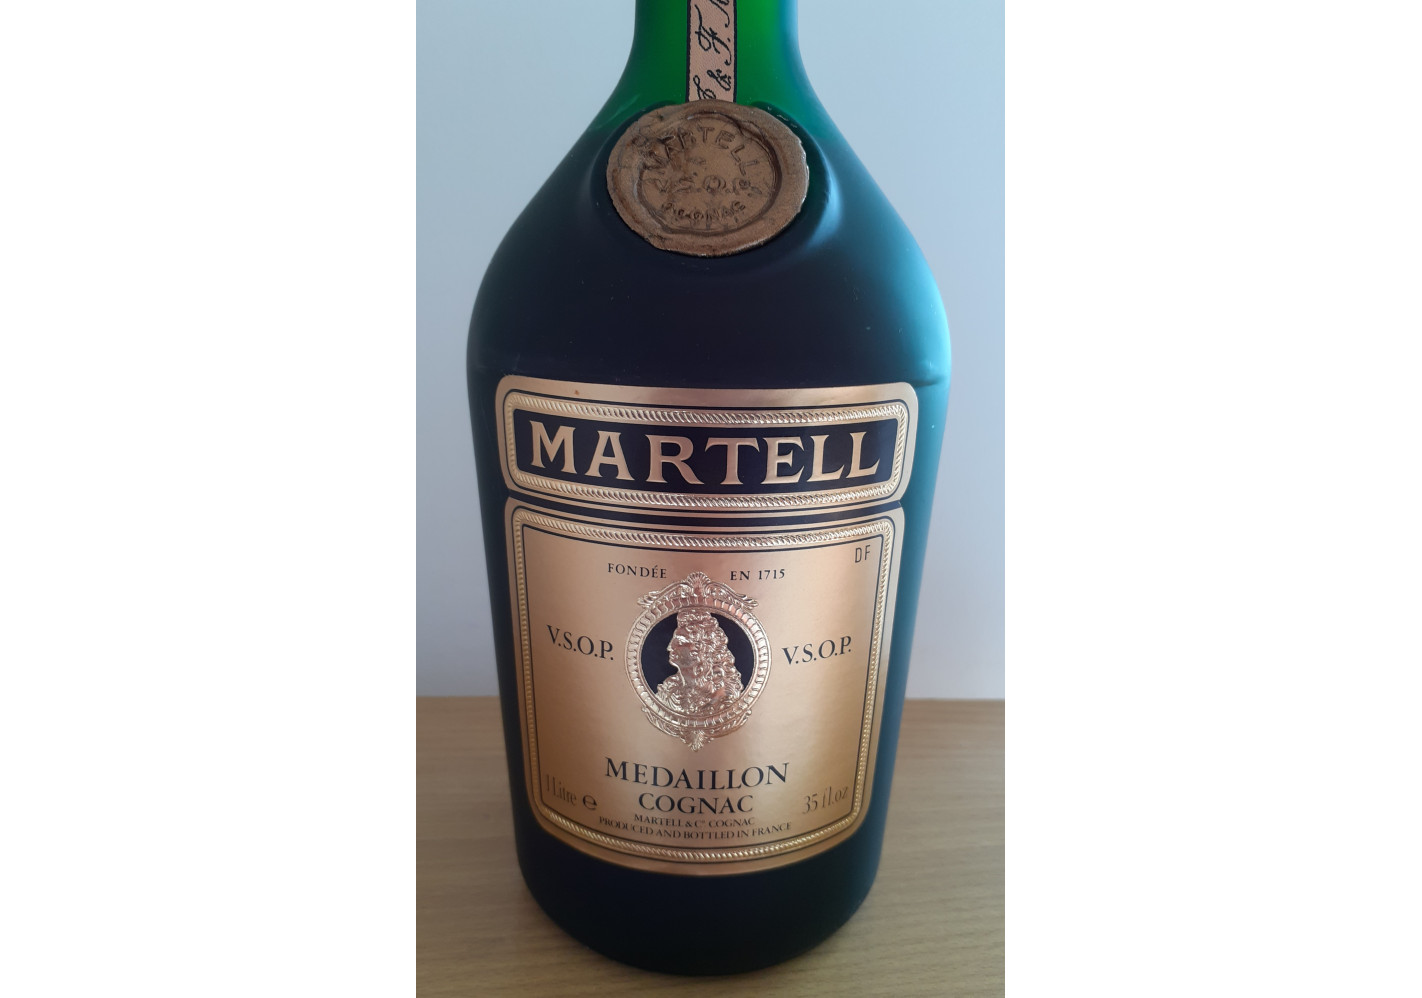 Medaillon cognac vsop - Martell Cognac